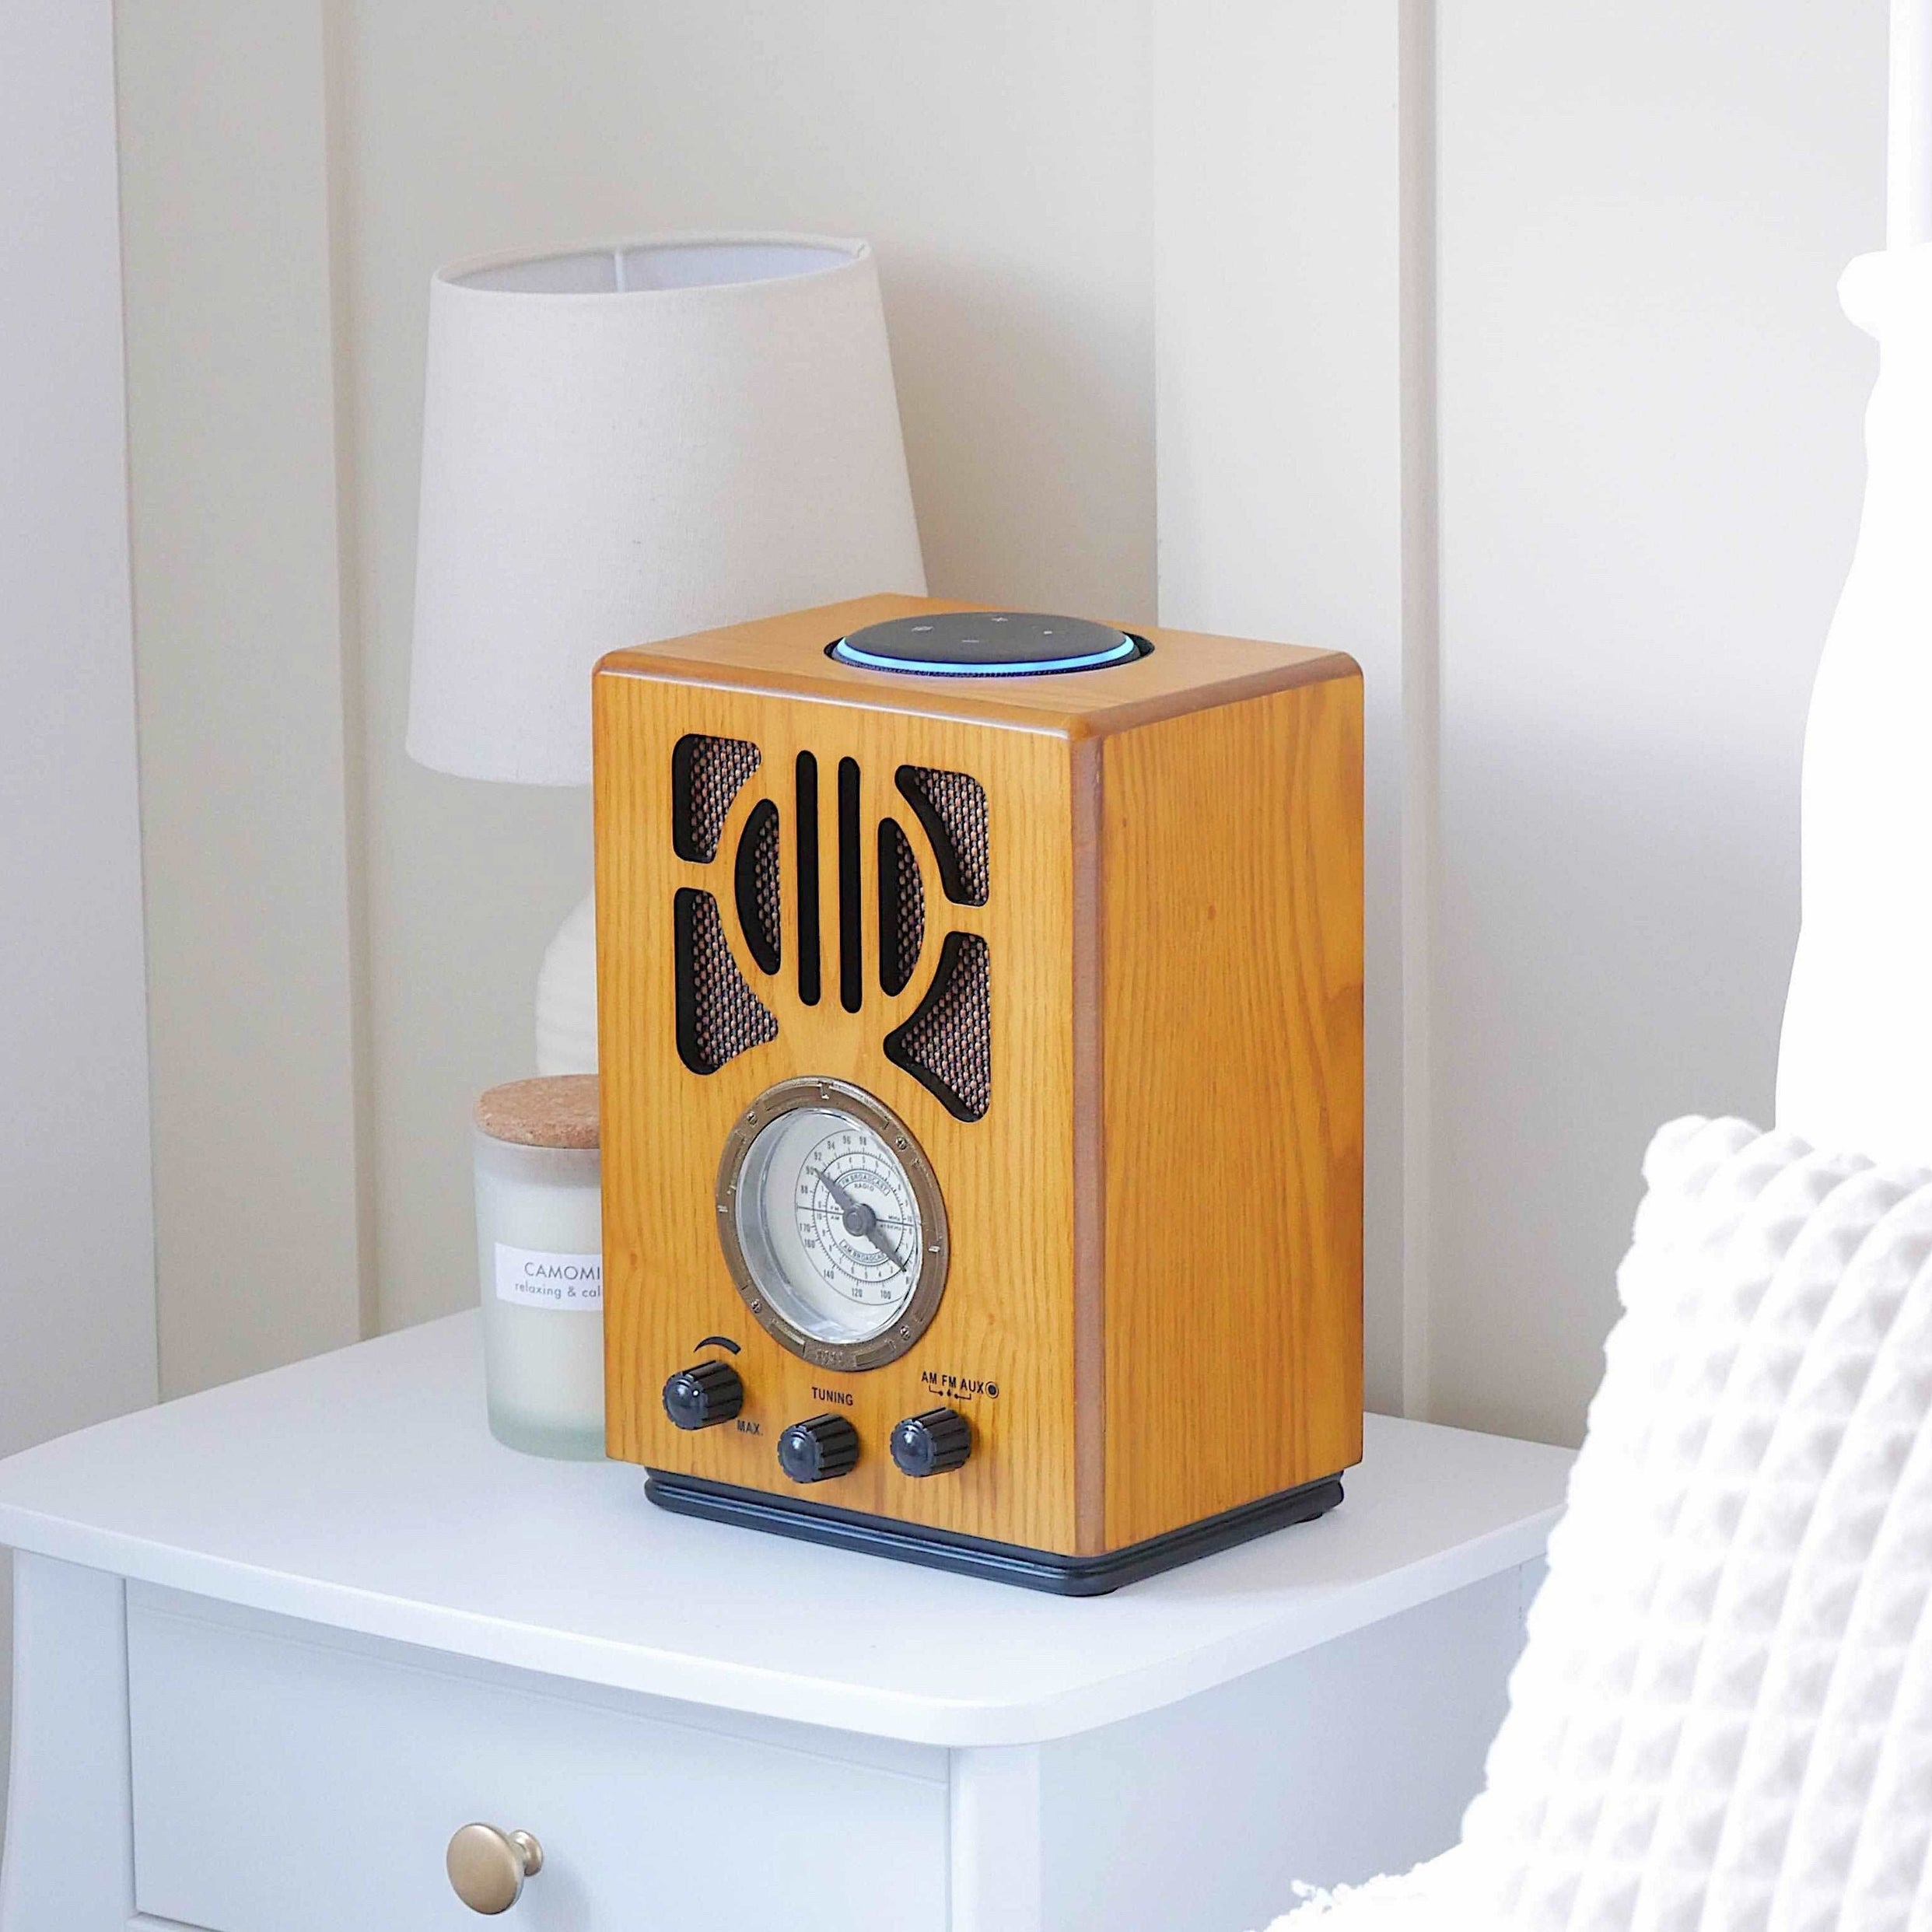 Vintage 1930's style Radio with Amazon Alexa (gen 2) plus FM/AM radio.